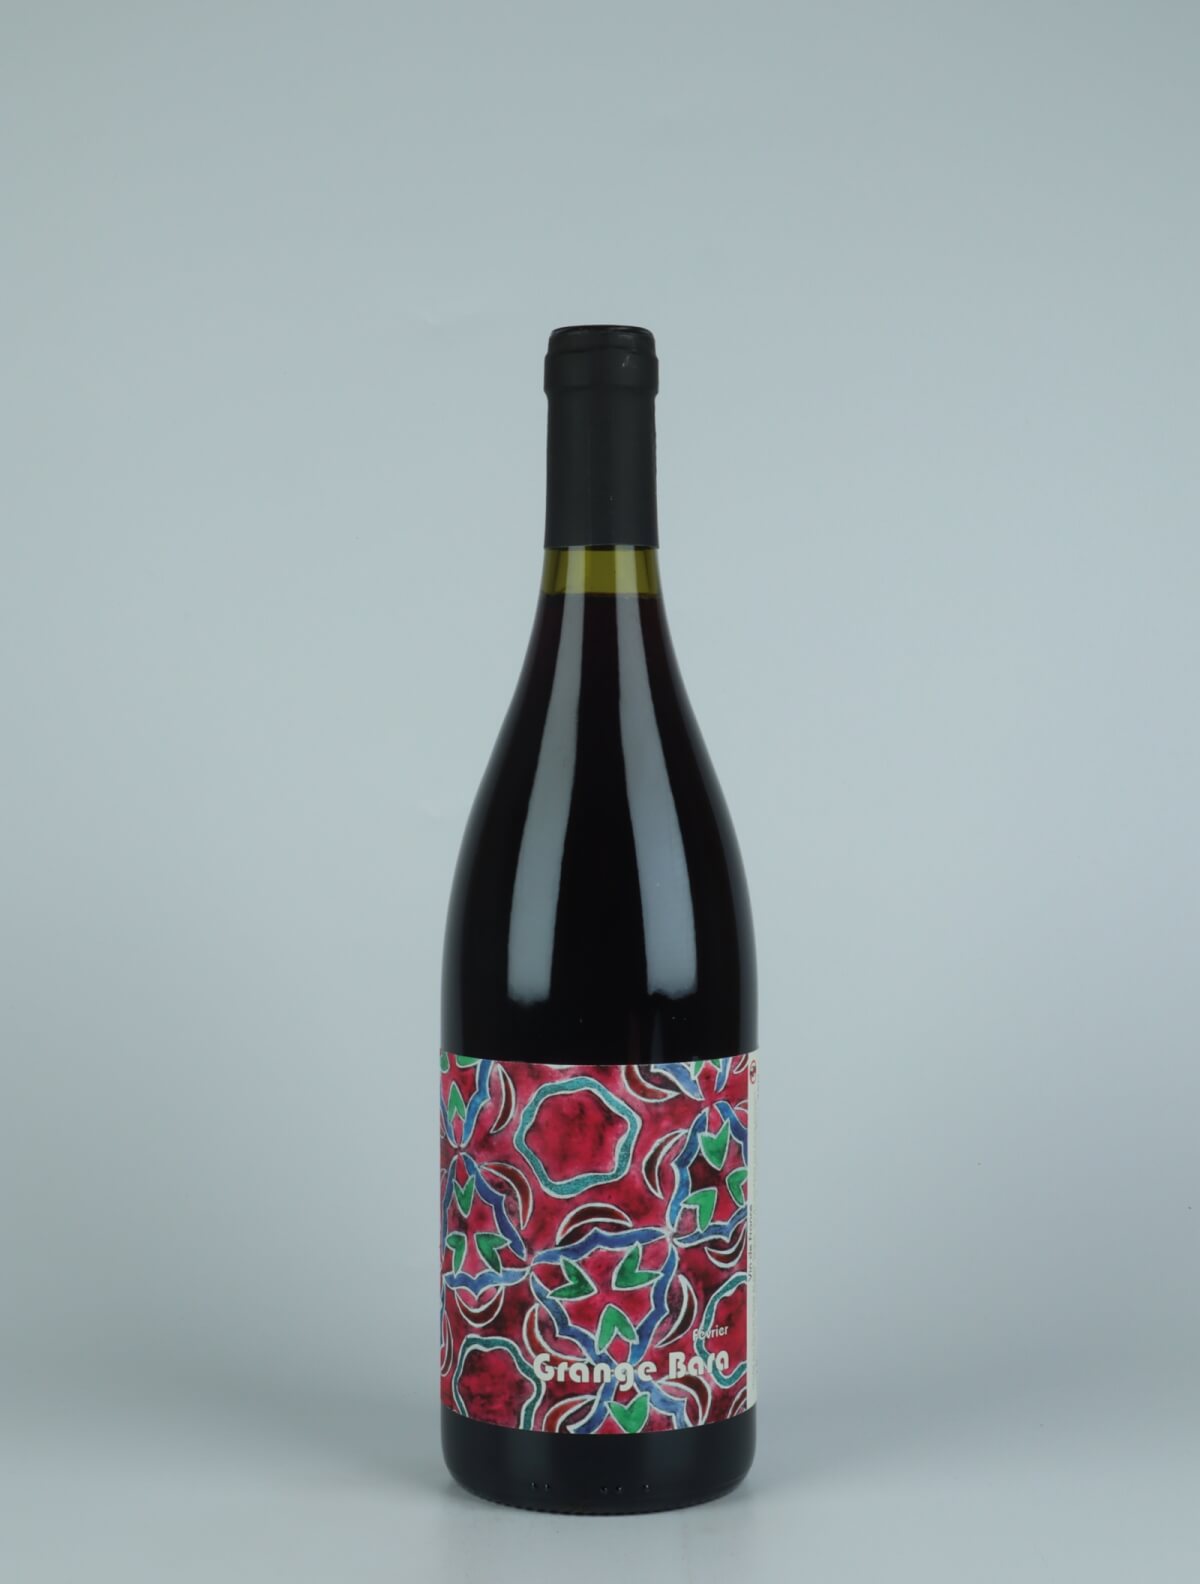 A bottle 2020 Février Red wine from Daniel Sage, Haute-Loire in France